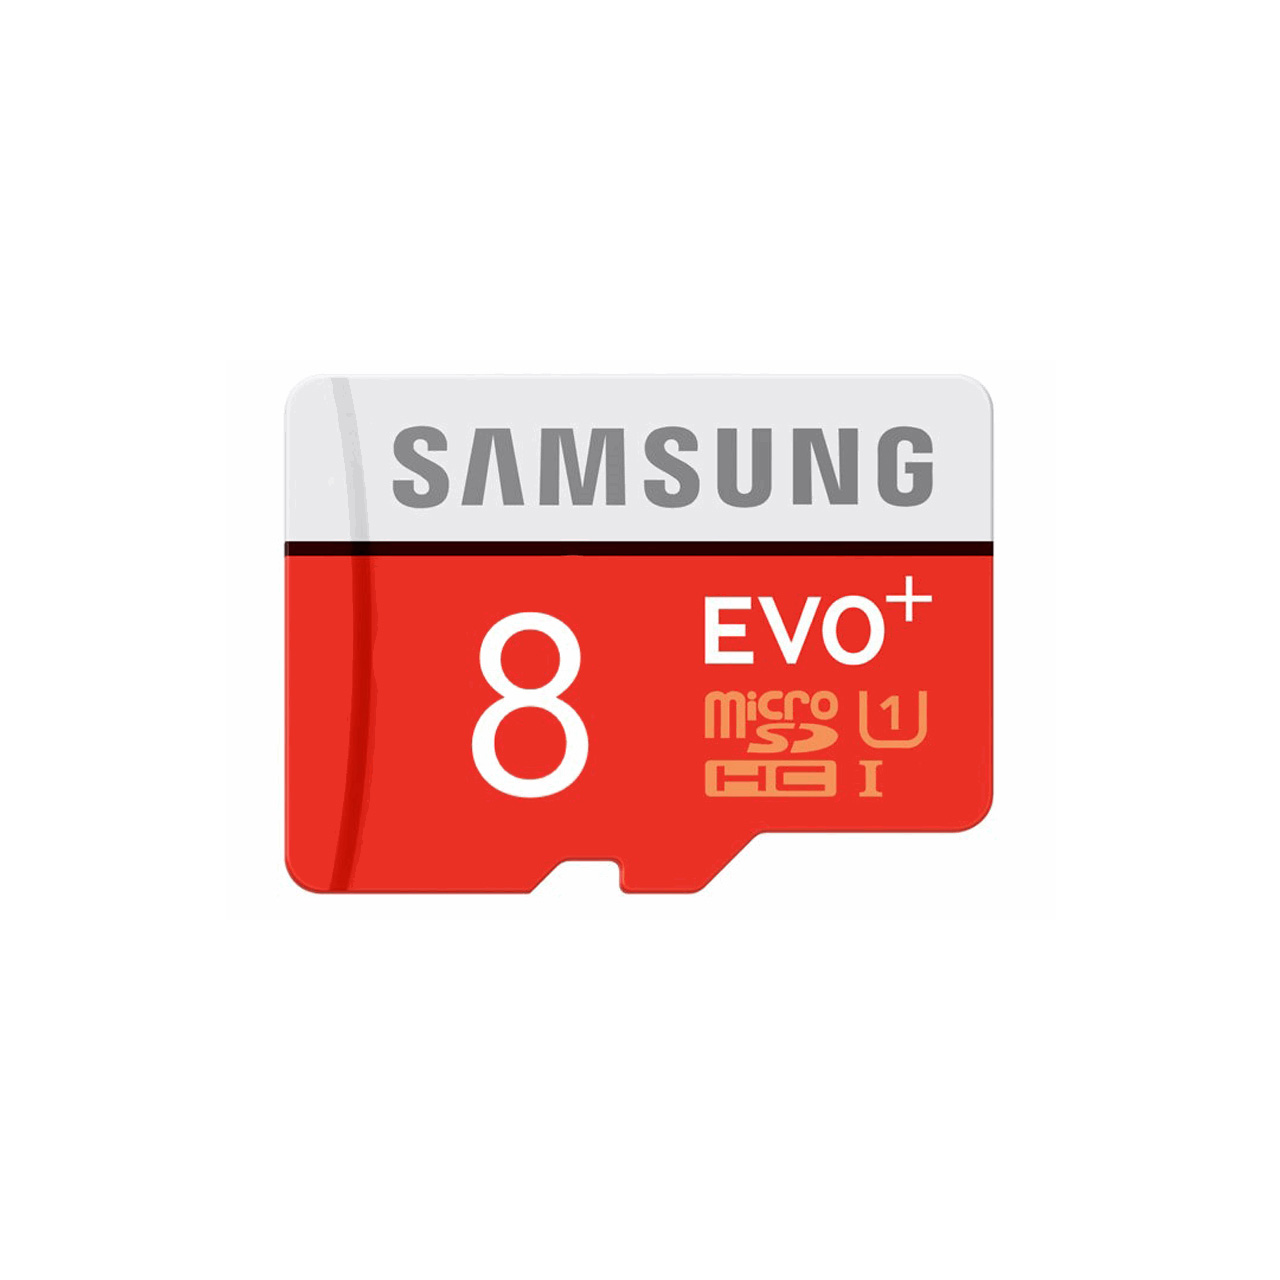 کارت حافظه microSDHC مدل Evo Plus کلاس 10 استاندارد UHS-I U1 سرعت 80MBps ظرفیت 8 گیگابایت